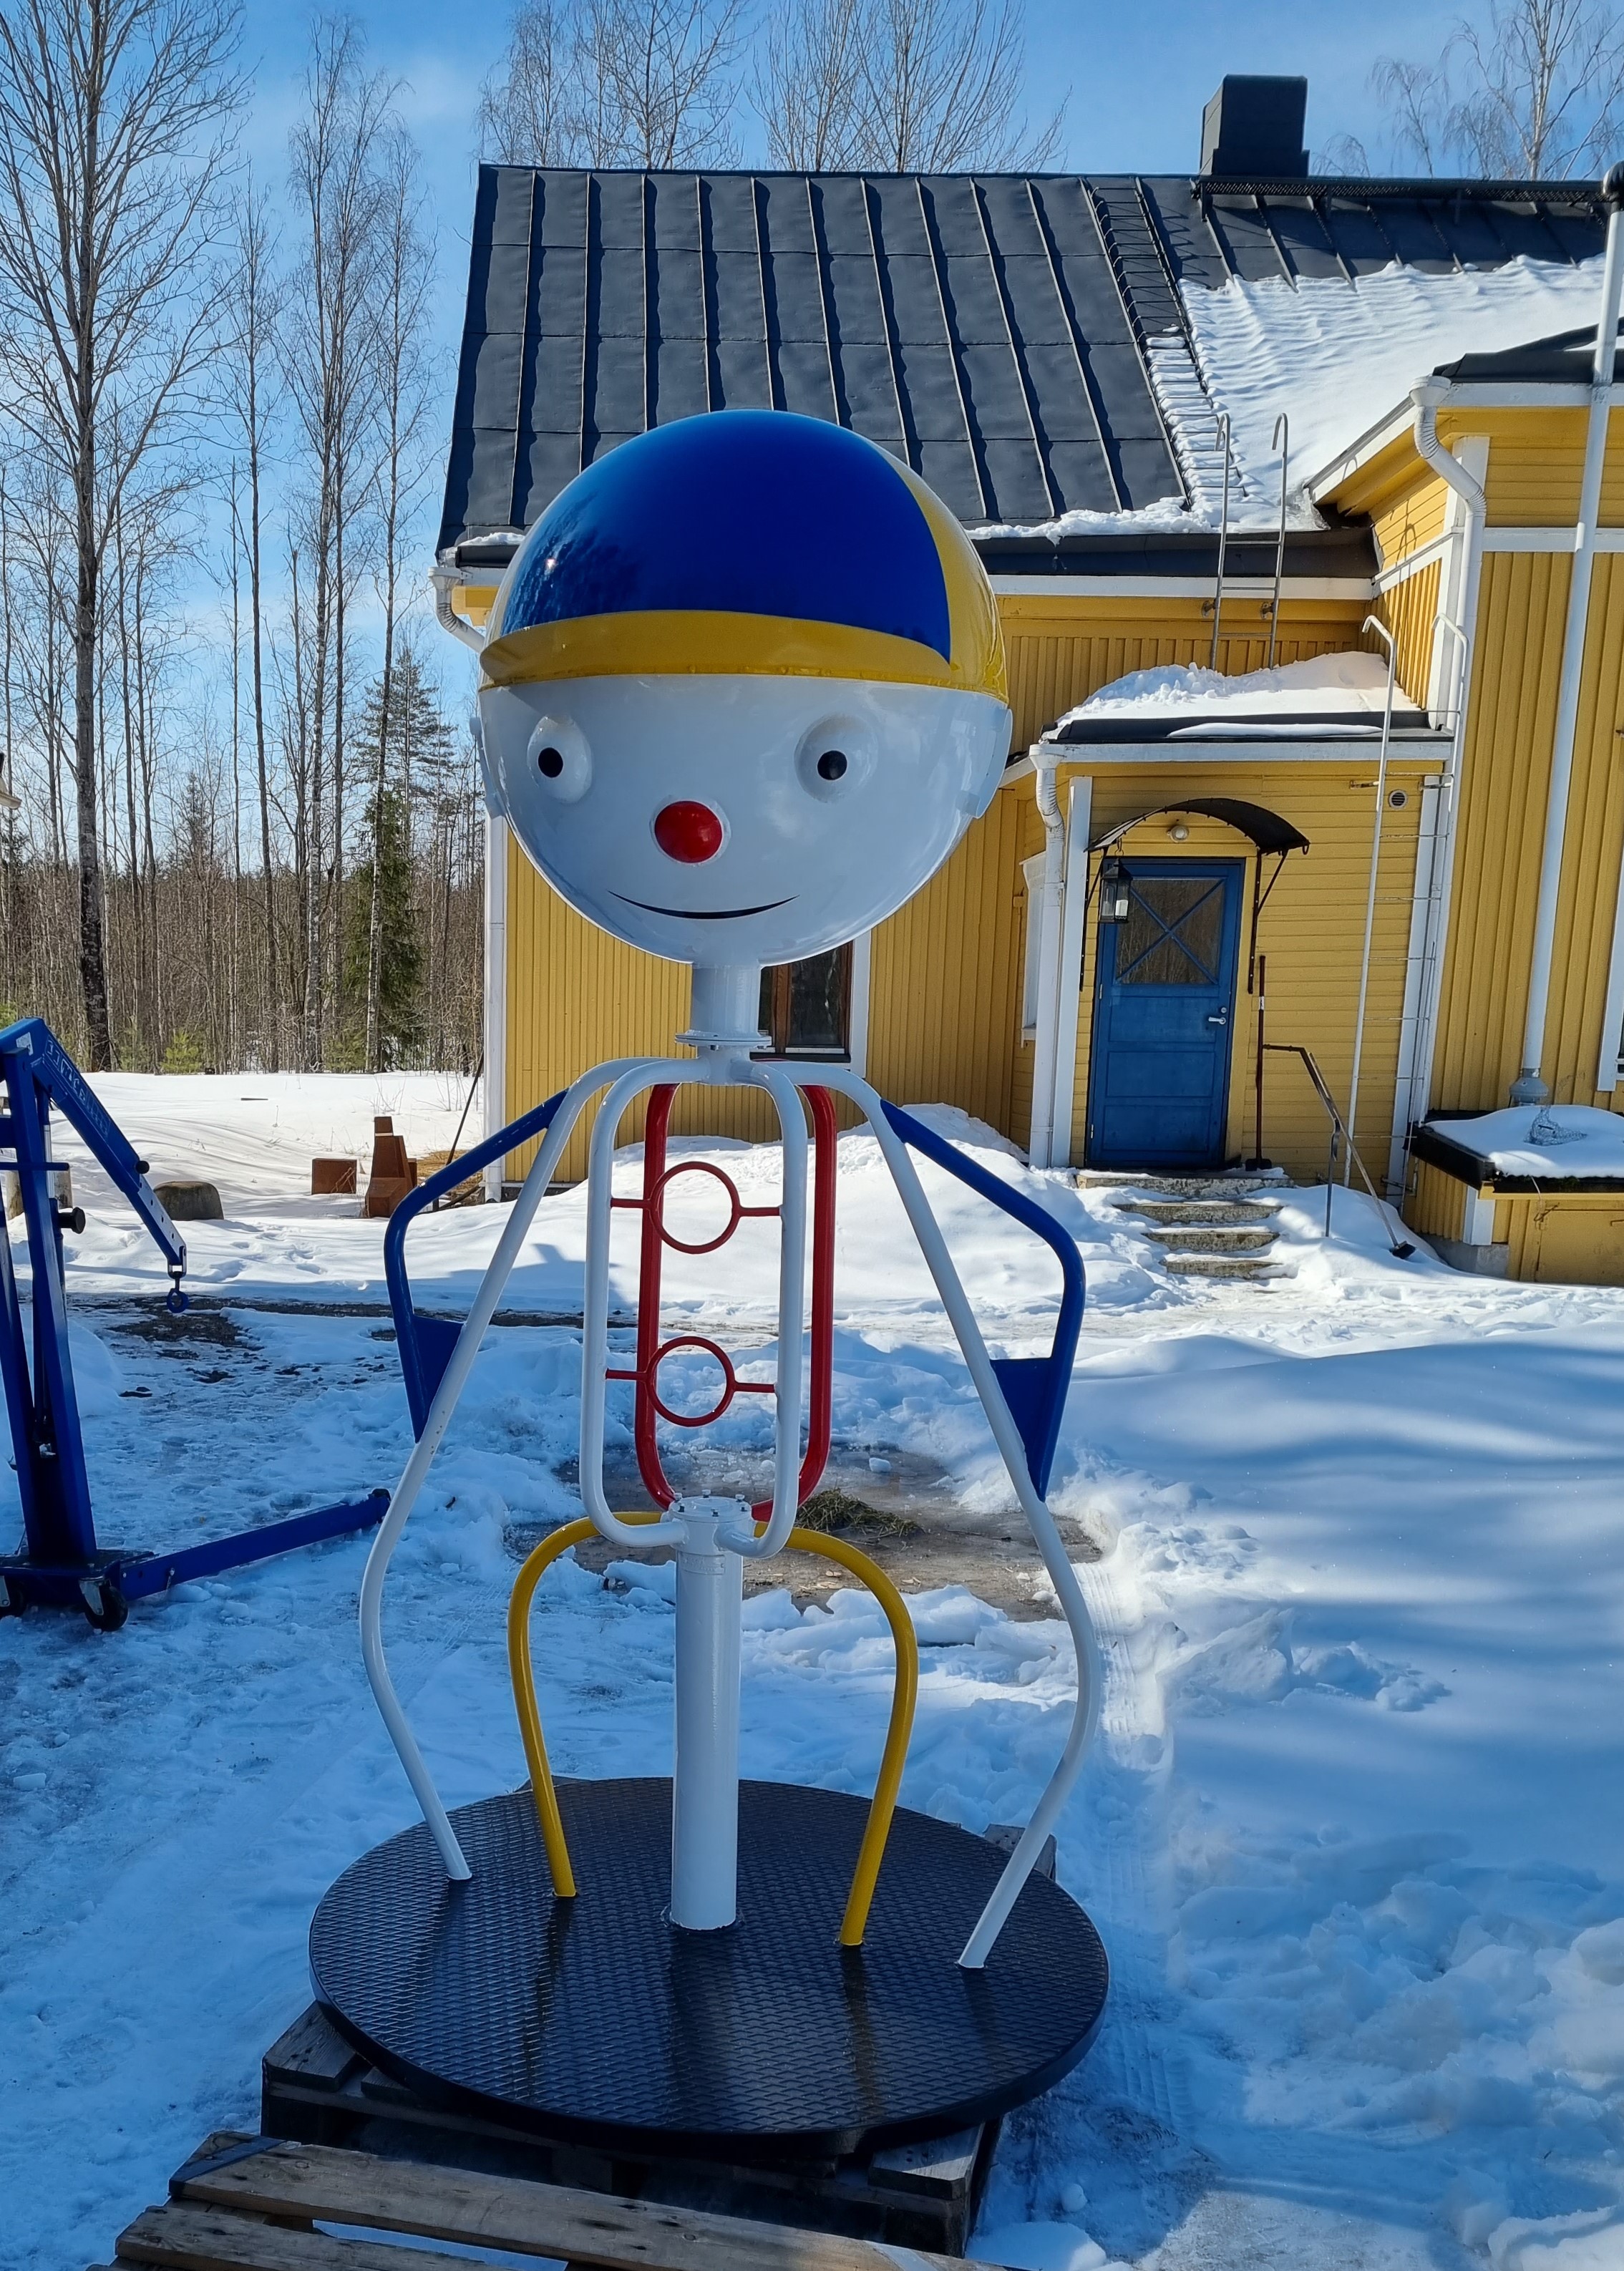 Metallinen, ihmismallinen lasten karuselli, jolla iso pää, silmät, nenä, suu ja lippahattu. Puistossa talvella, taustalla keltainen puutalo.